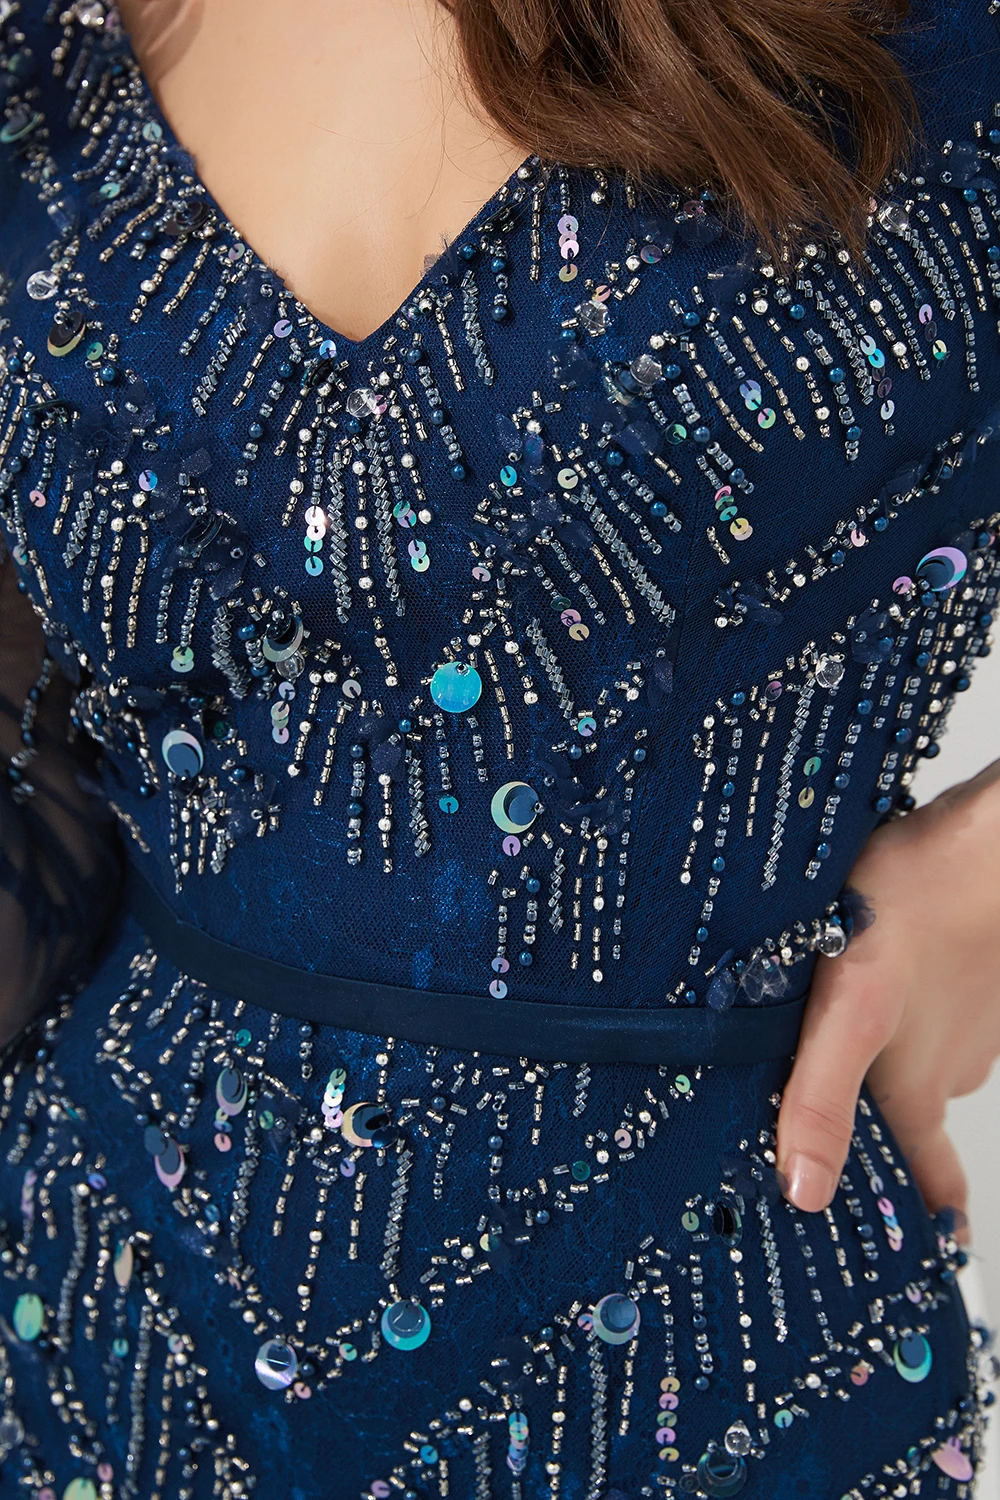 Темно-синие вечерние платья Длинные Русалка v-образным вырезом кружева блестками бисером с длинным рукавом вечернее платье Robe de Soiree